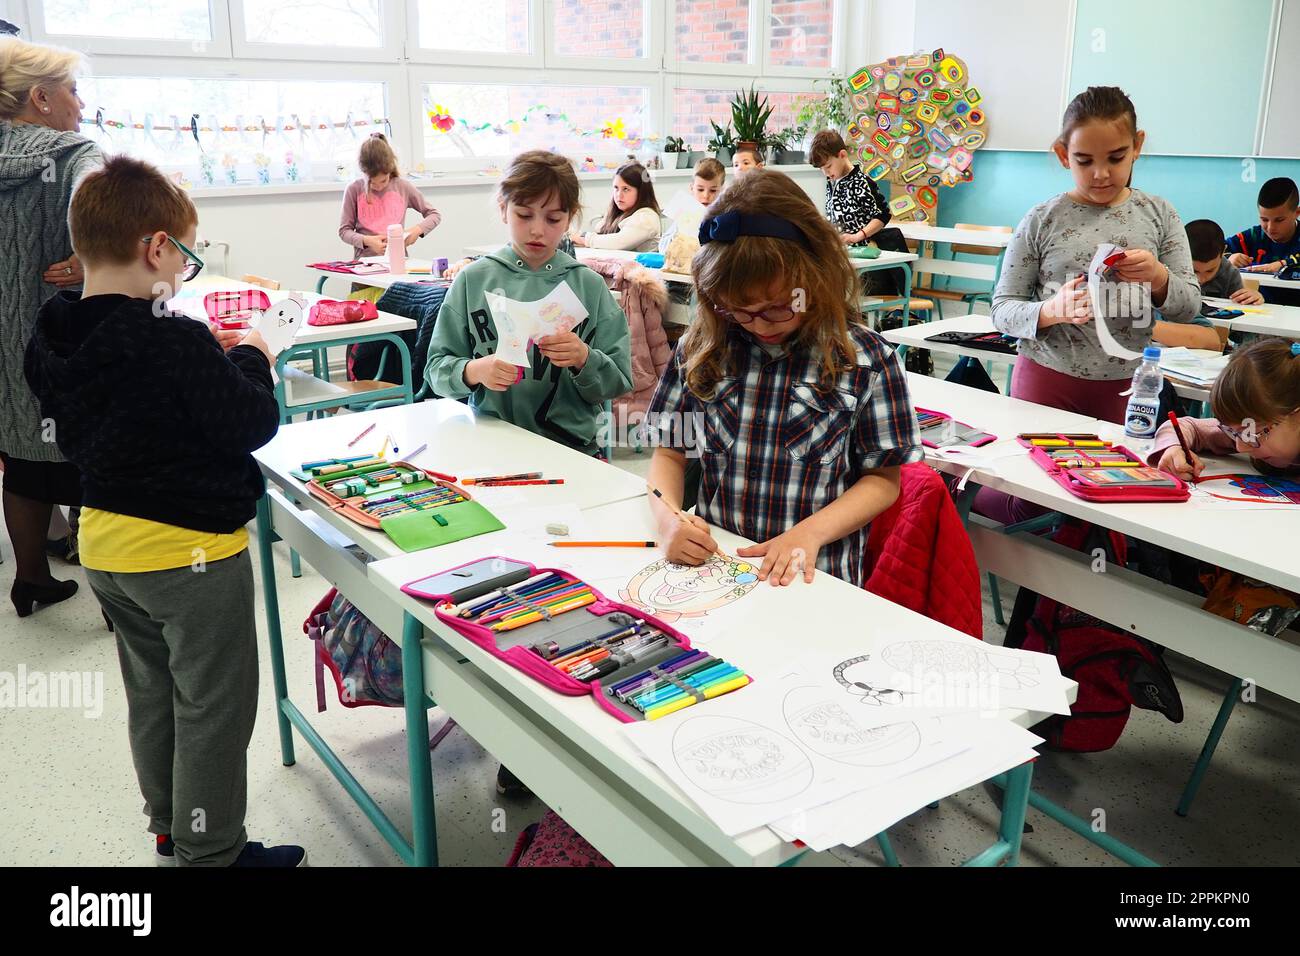 Los niños de 9-10 años, niños y niñas, hacen artesanías caseras en la lección. Estándares modernos de educación, desarrollo de habilidades creativas y motricidad fina en la escuela 9 de abril de 2022 Serbia Srem Foto de stock